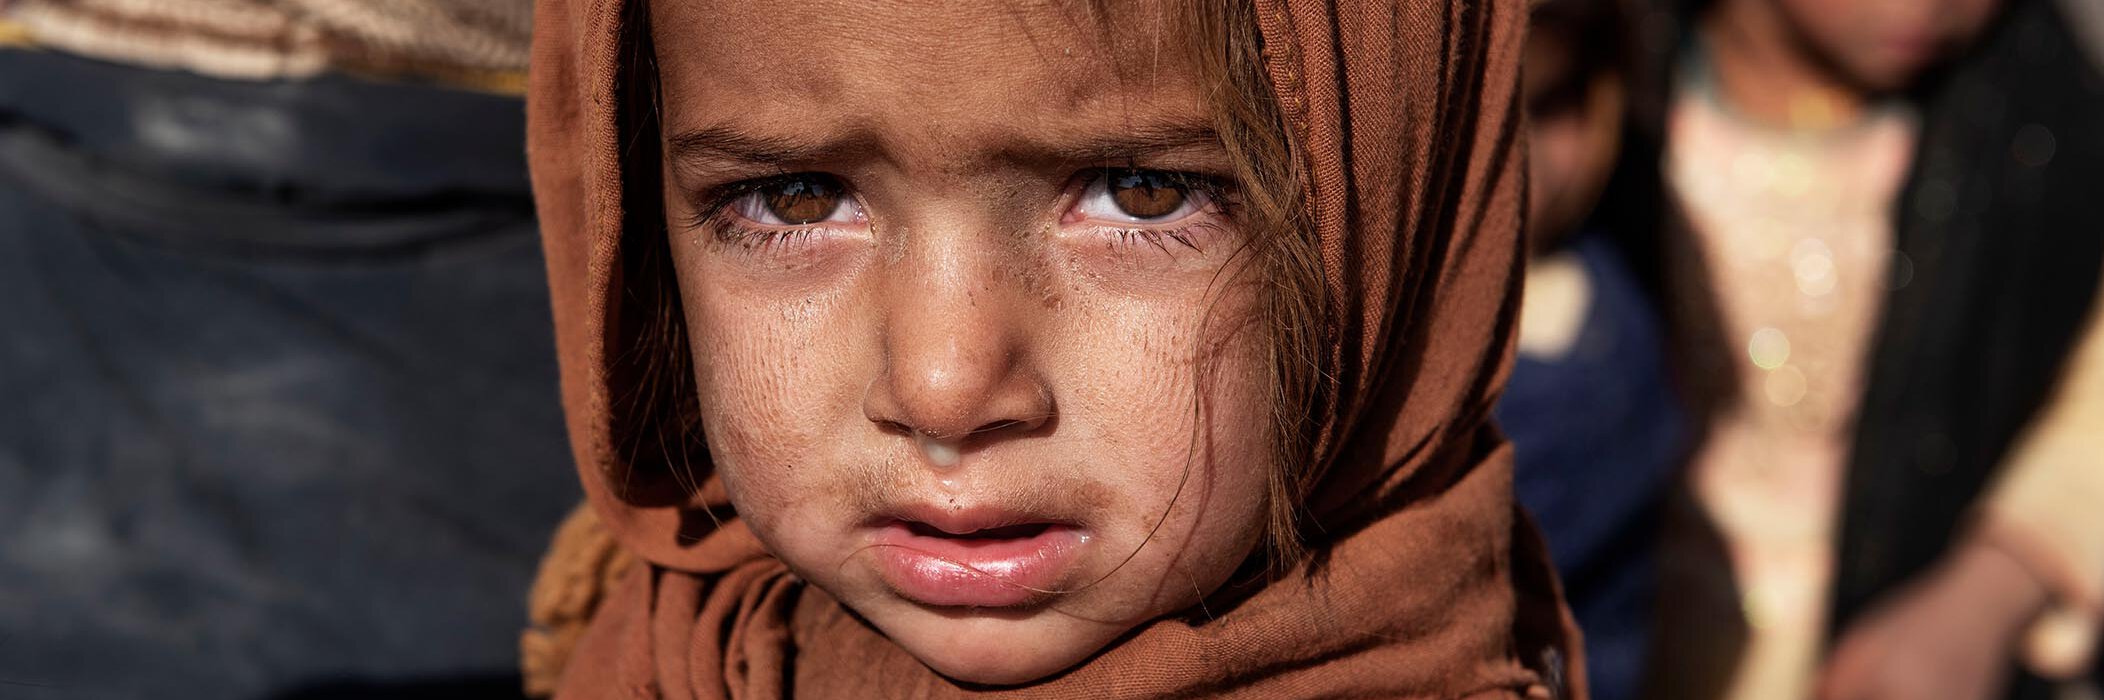 Ein afghanisches Mädchen blickt traurig in die Kamera.